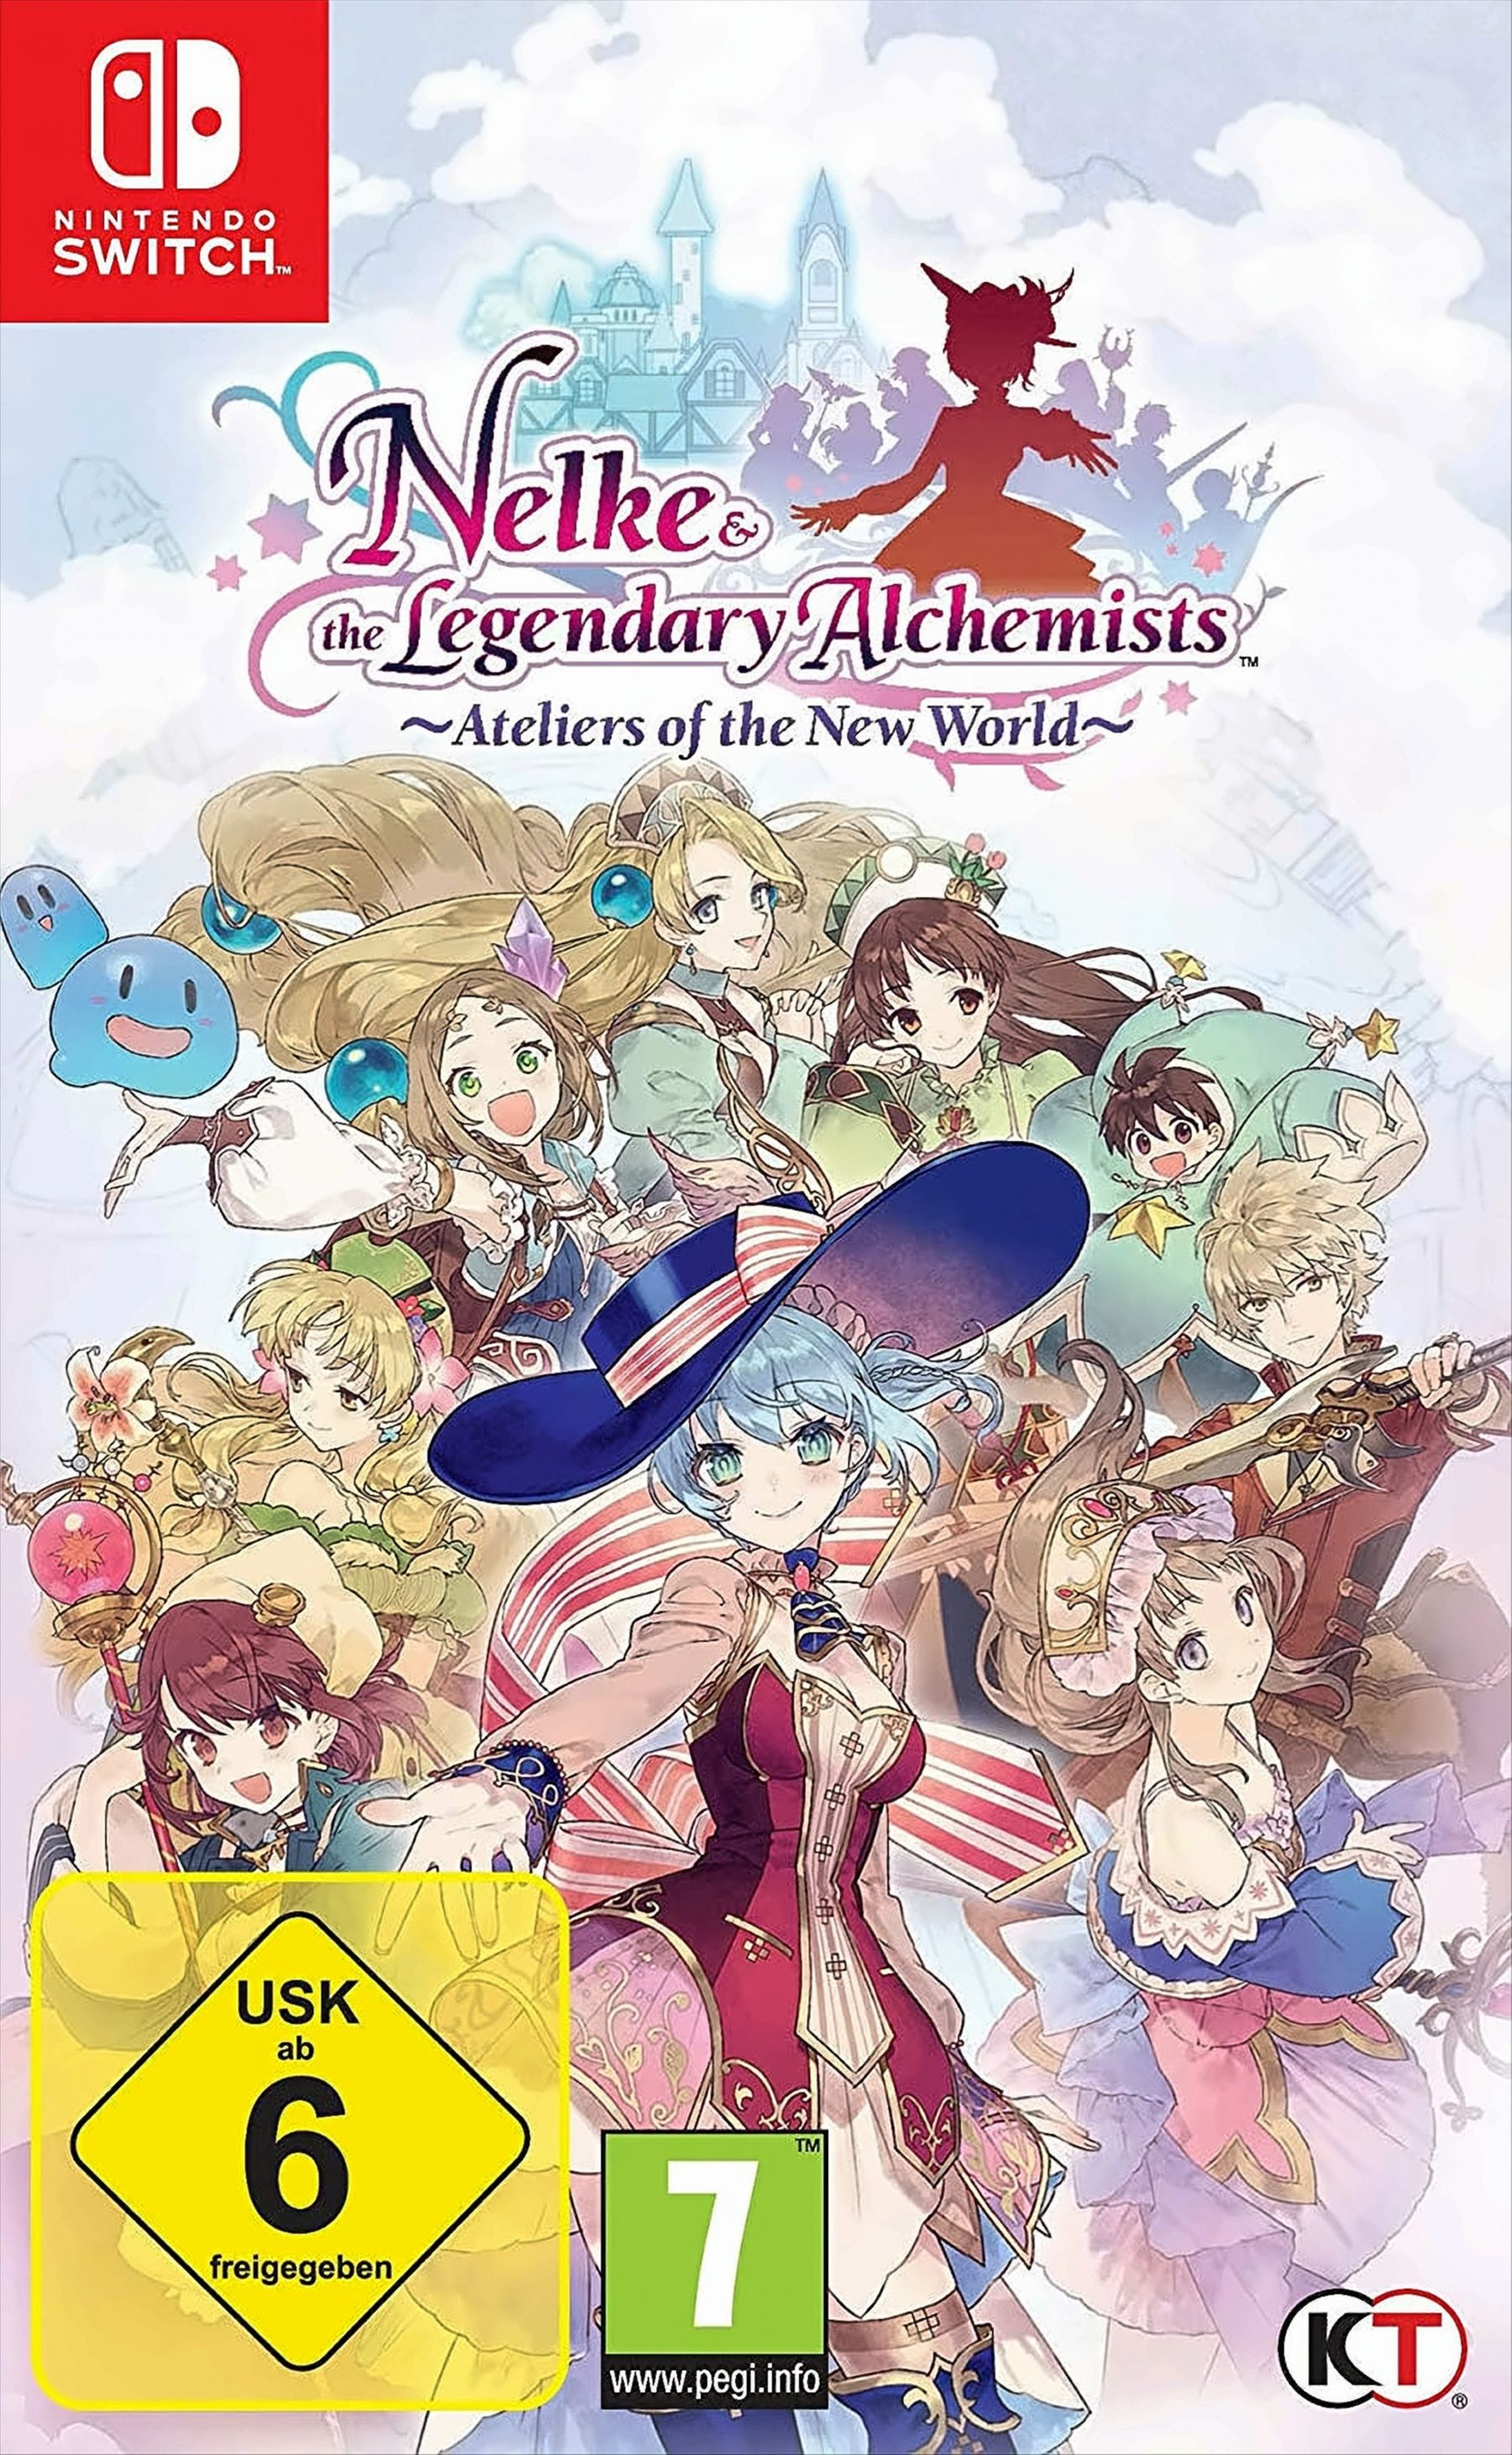 Nelke & Alchemists: the New World the Legendary of - [Nintendo Switch] Ateliers